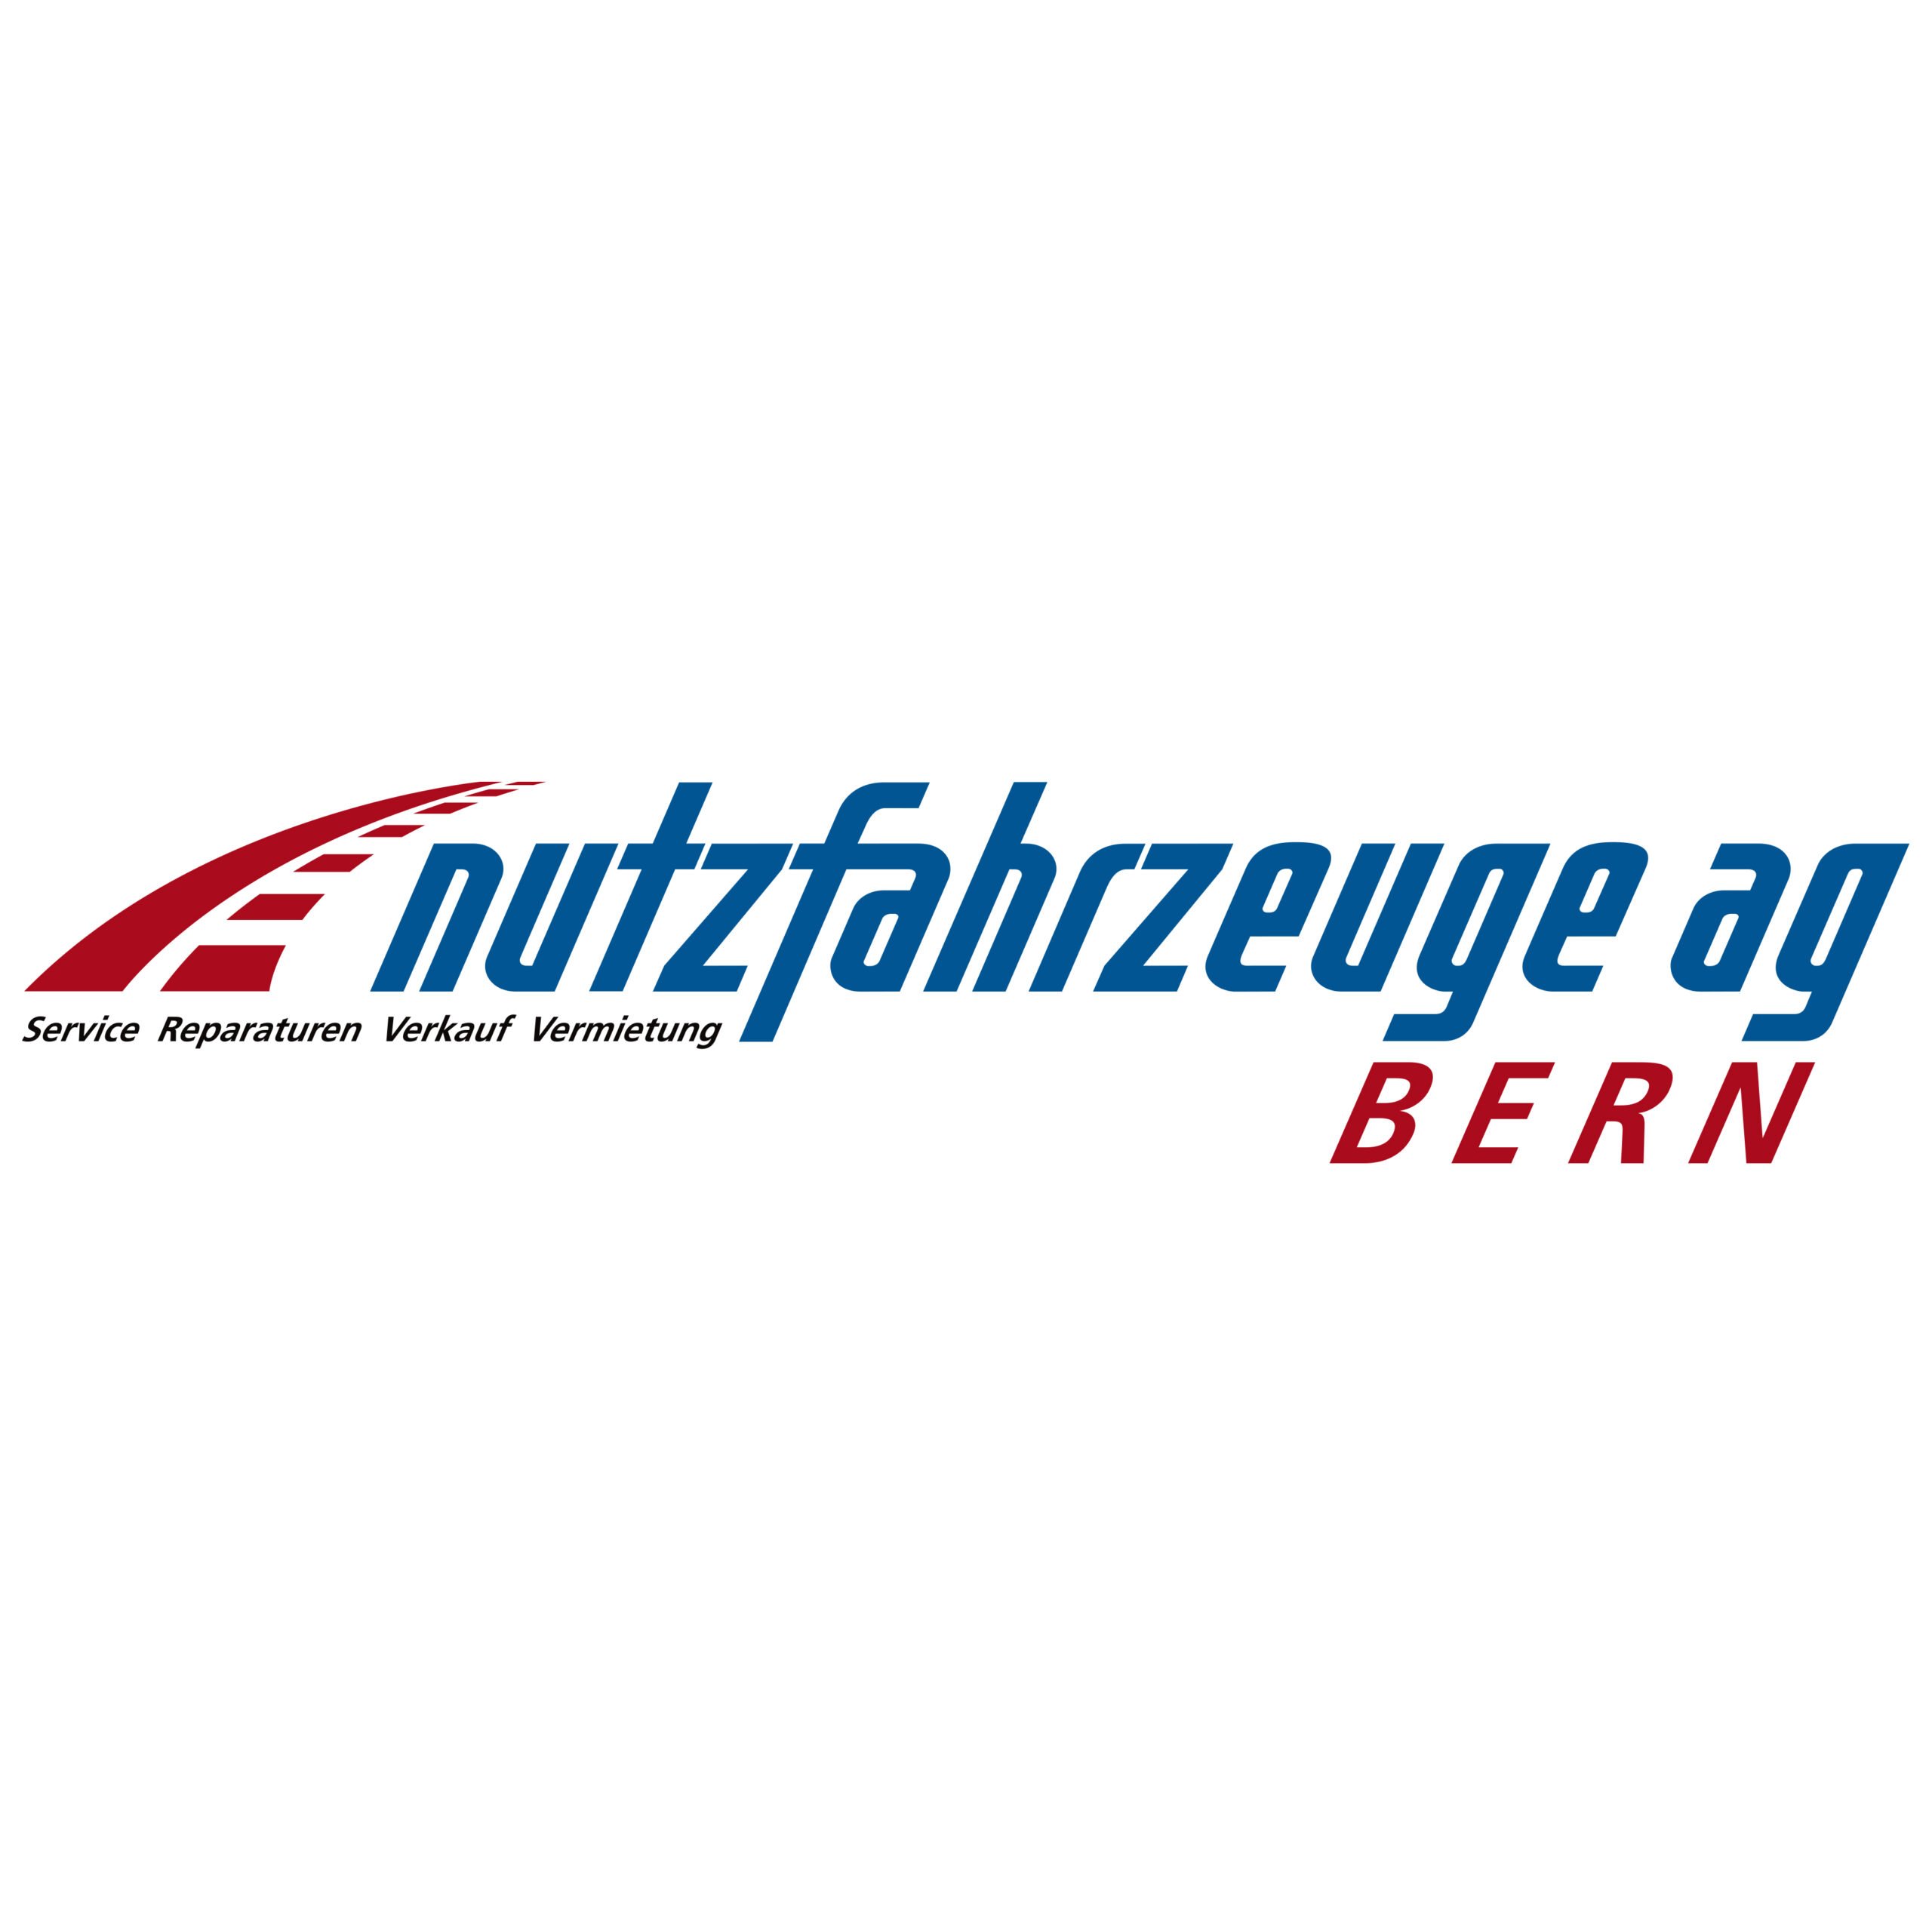 Nutzfahrzeuge AG Bern - Car Rental Agency - Bern - 031 980 01 10 Switzerland | ShowMeLocal.com